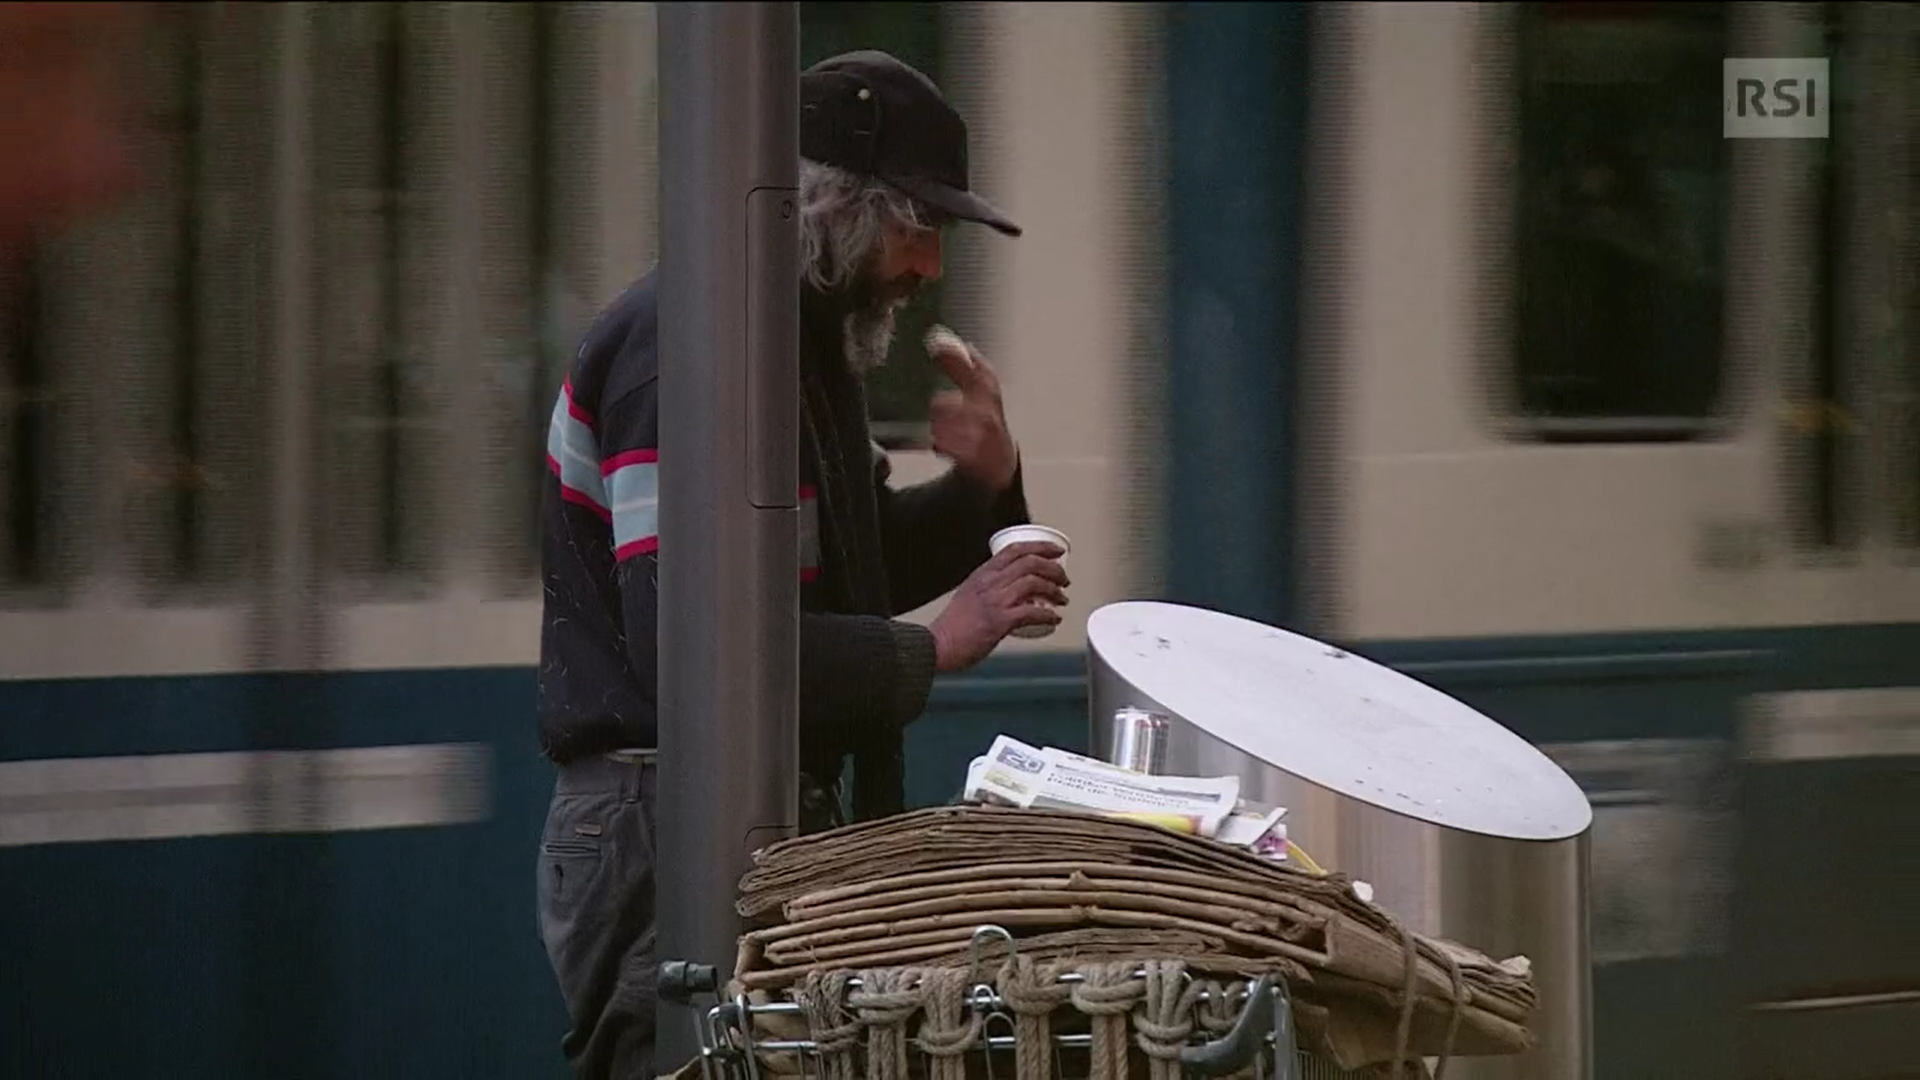 Uomo con berretto preleva da un cestino della spazzatura un alimento non completamente consumato.